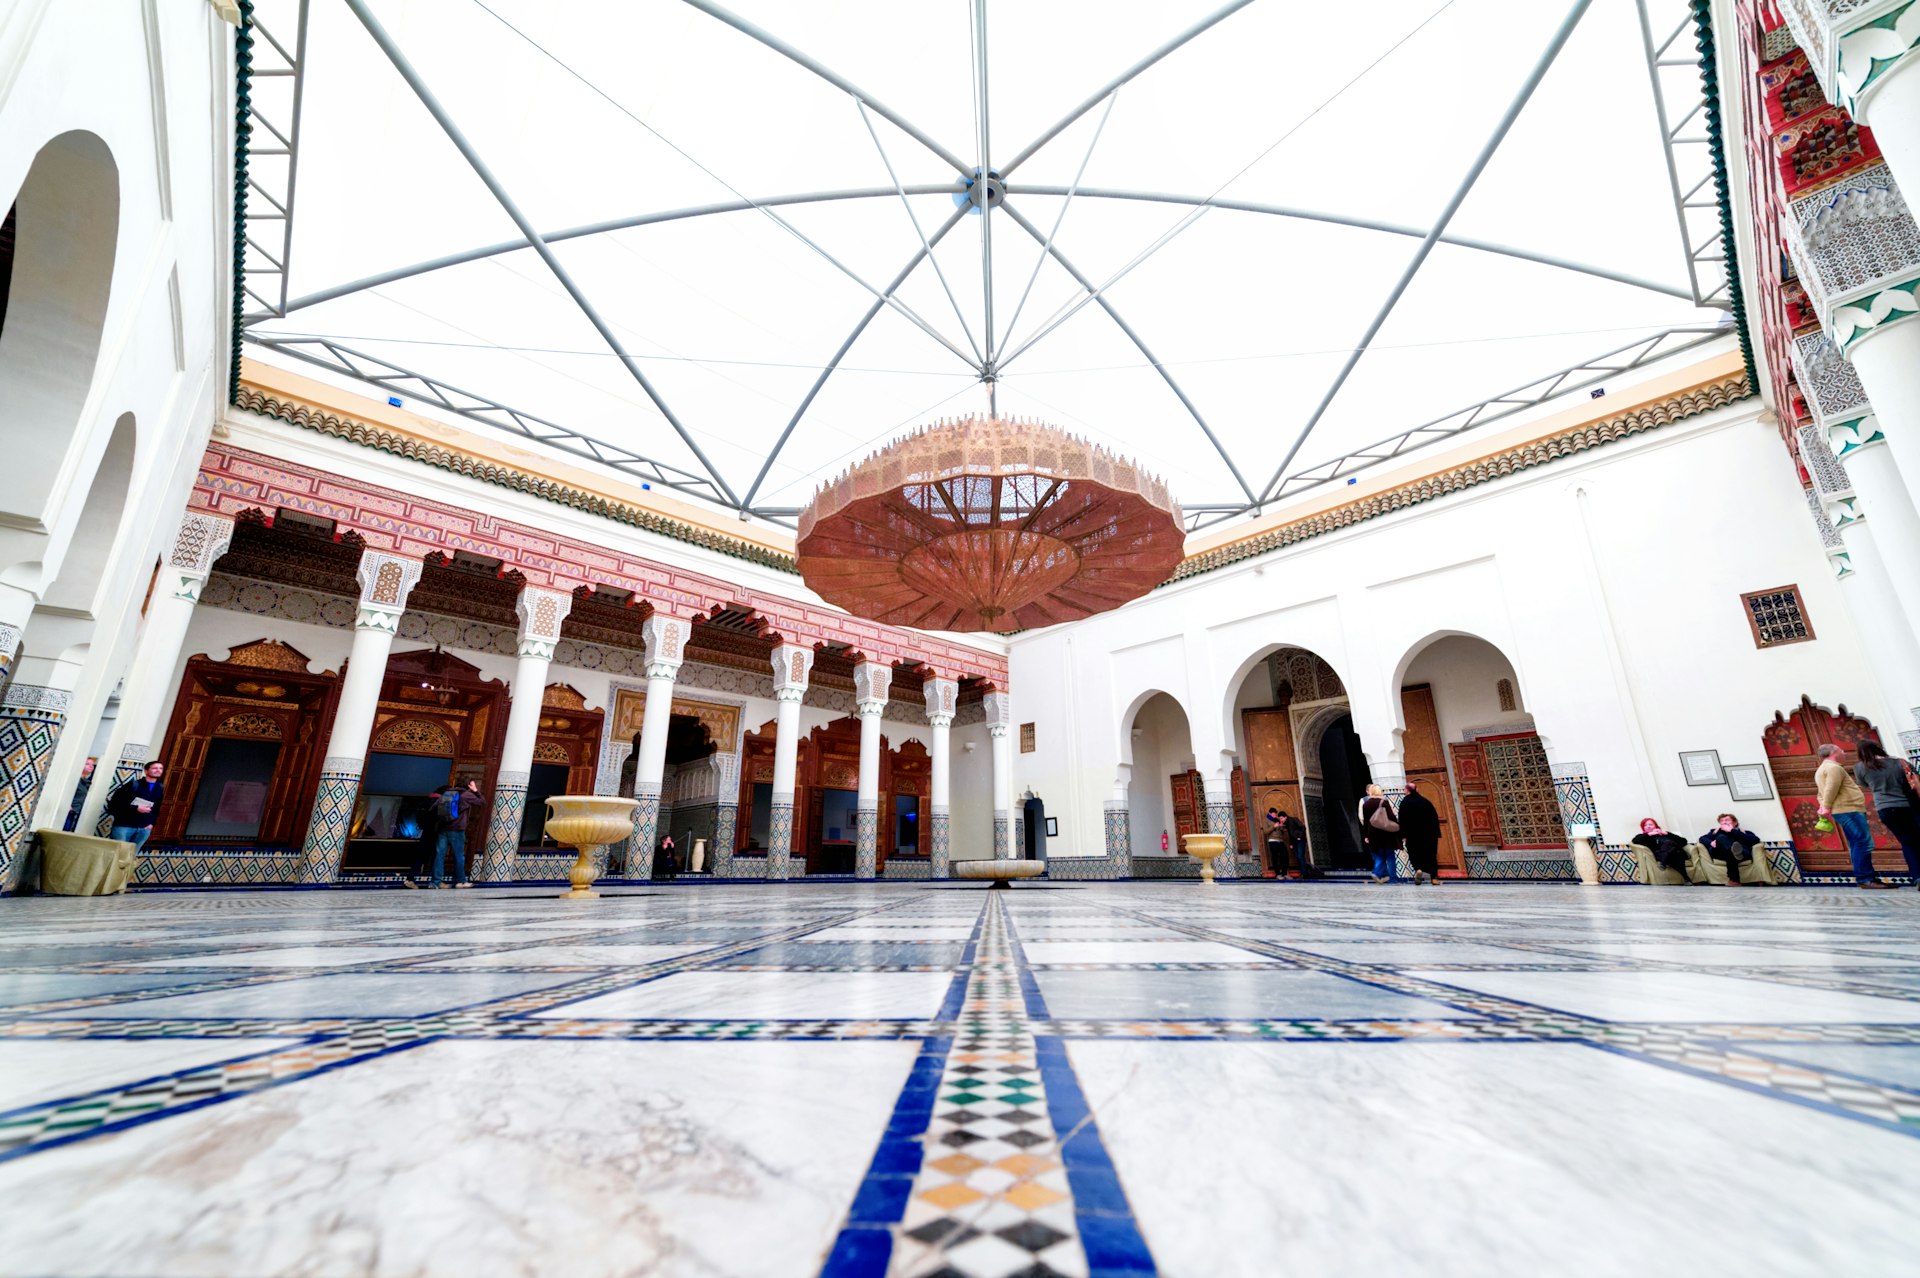 The Marrakech Museum courtyard